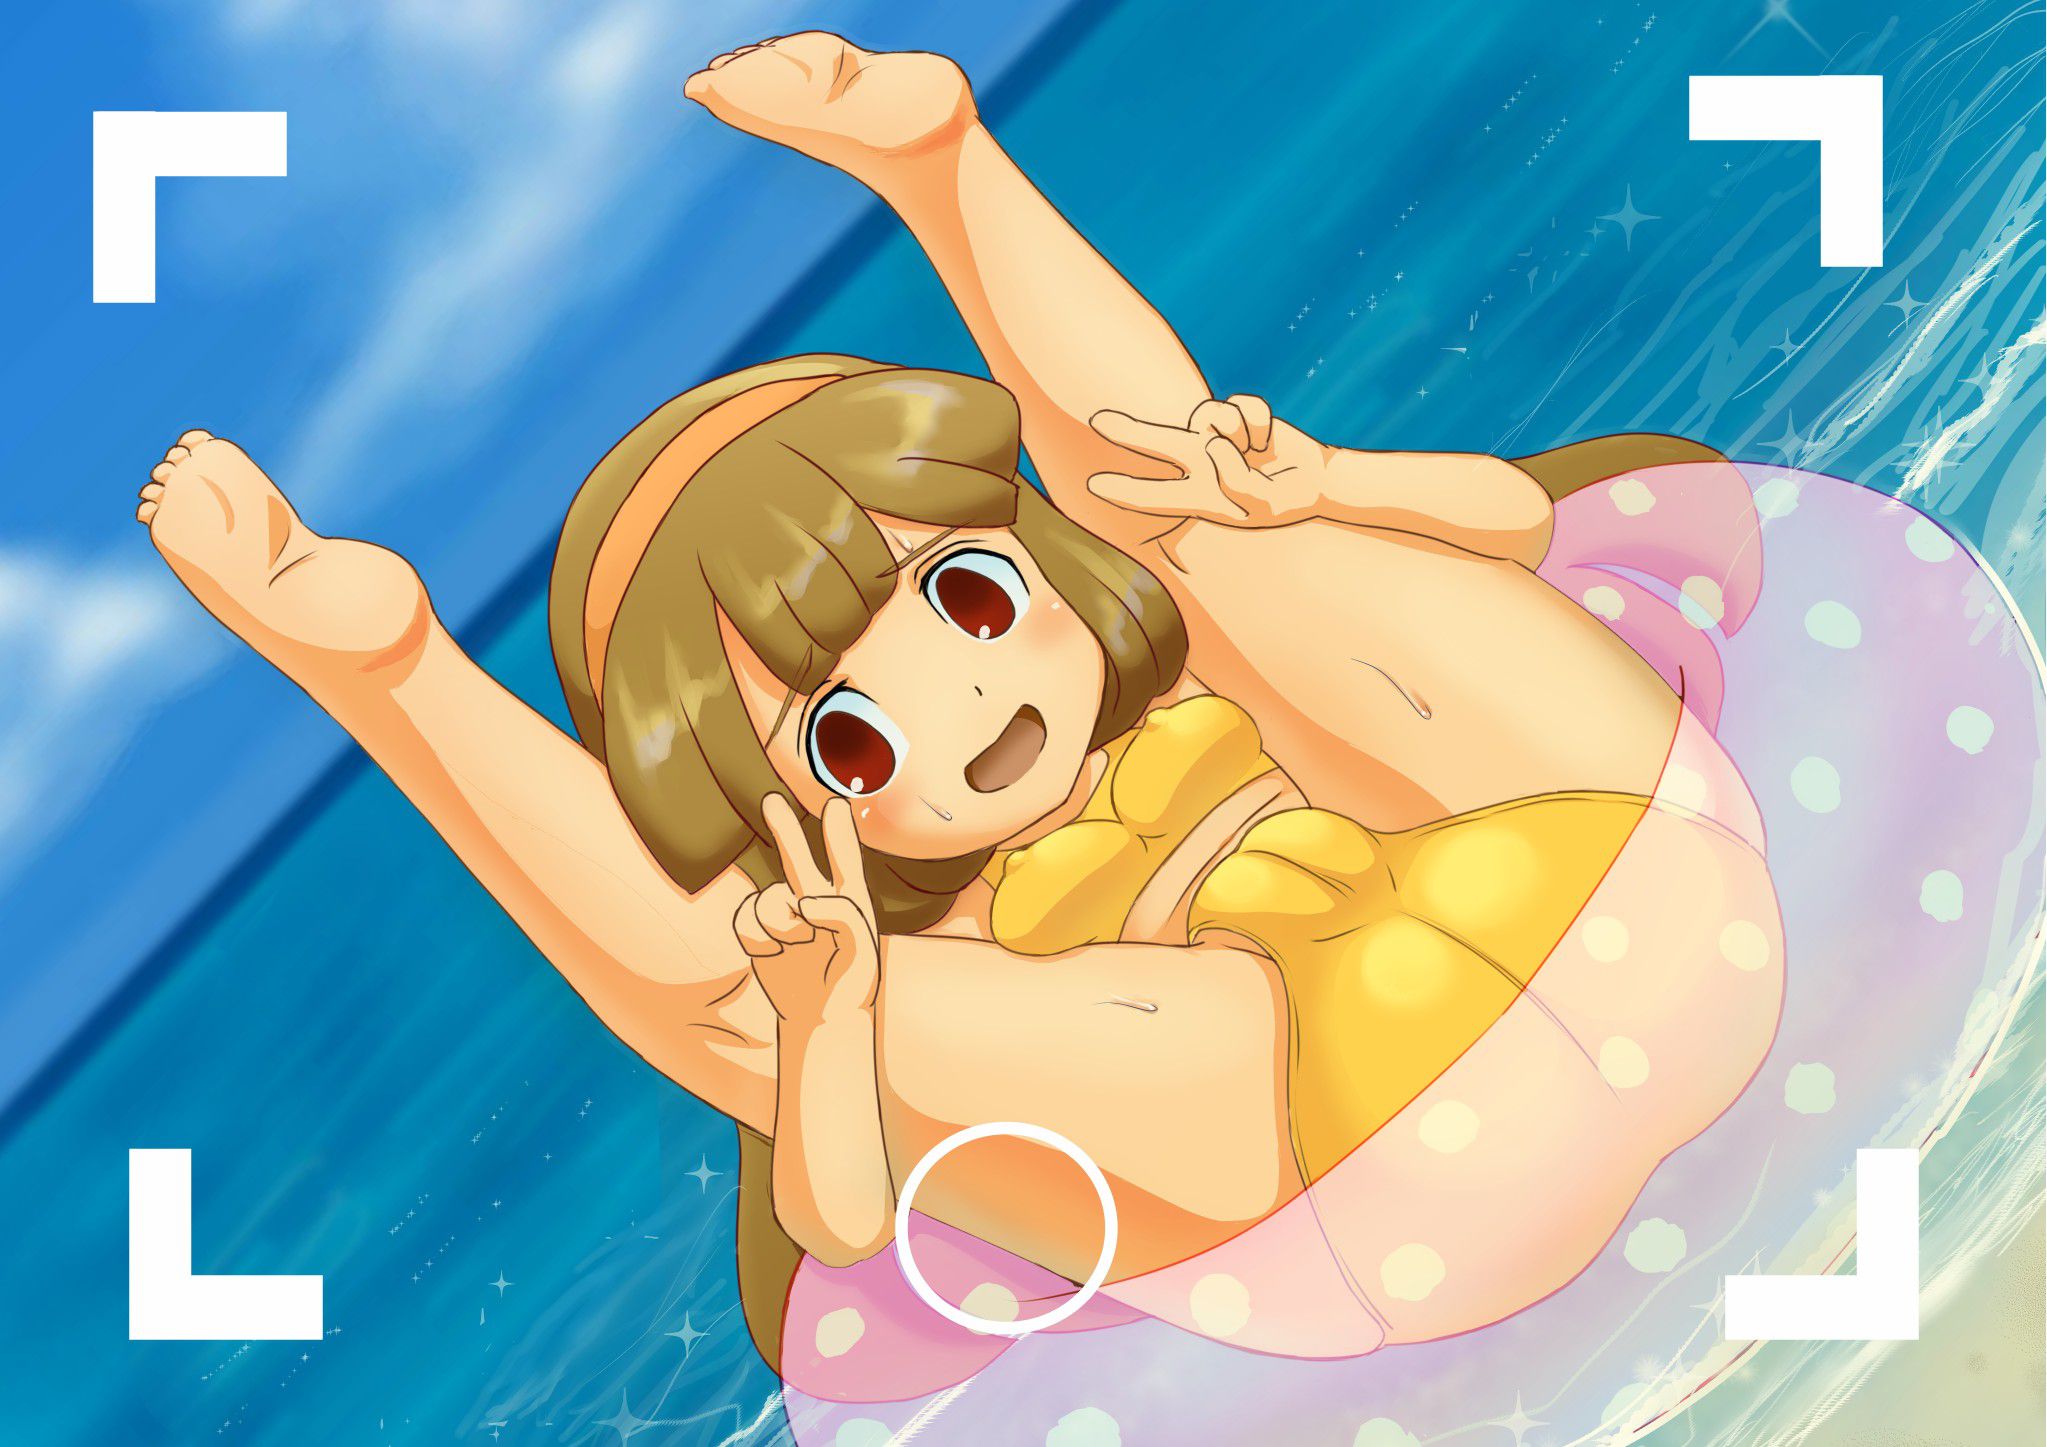 【Nana Yellow Nanako-chan (Inayre)】Inazuma Eleven GO's JC1 year Loli player Nana Hana Hana's second erotic image that you want to make on your cheeks 25